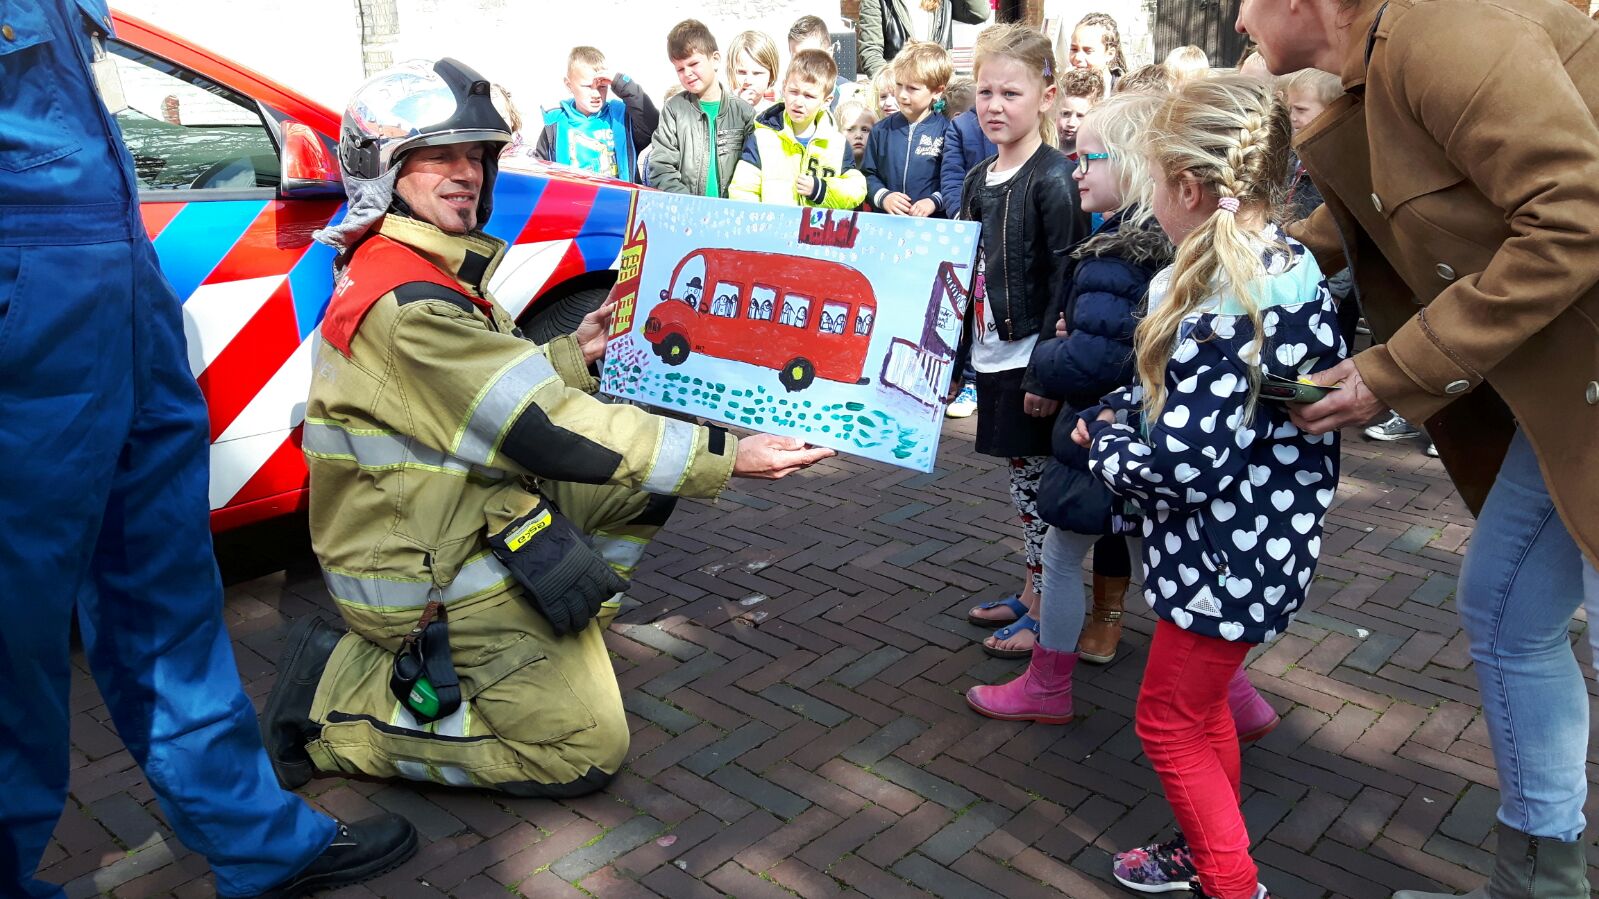 Leerlingen van OBS De Zandplaat uit Ovezande worden na het bezoek aan het museum verrast door een brandweerauto van sponsor Zeeland Refinery